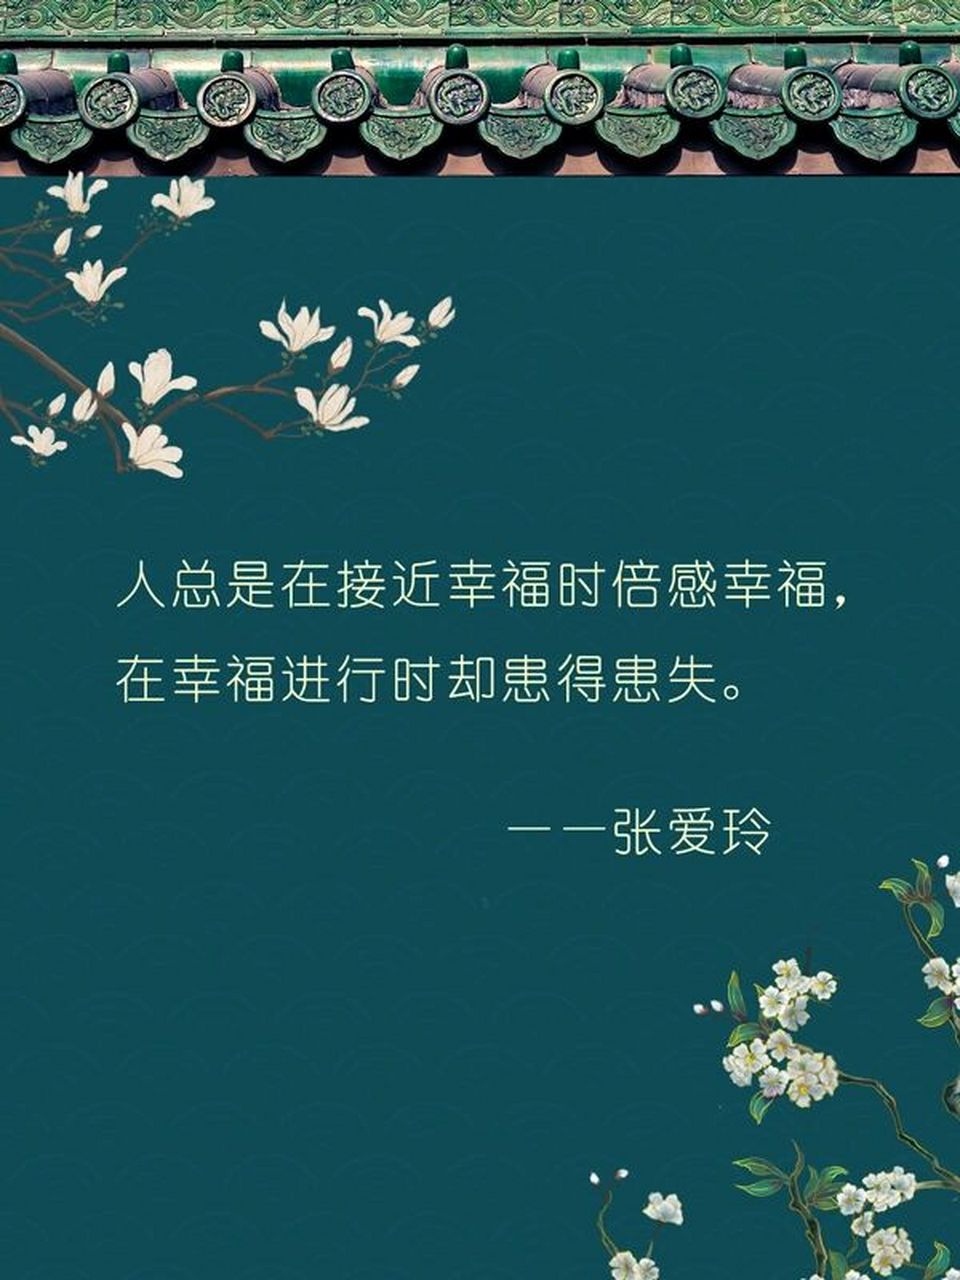 文案丨摘抄丨「张爱玲」的经典语录合集 99「人总是在接近幸福时